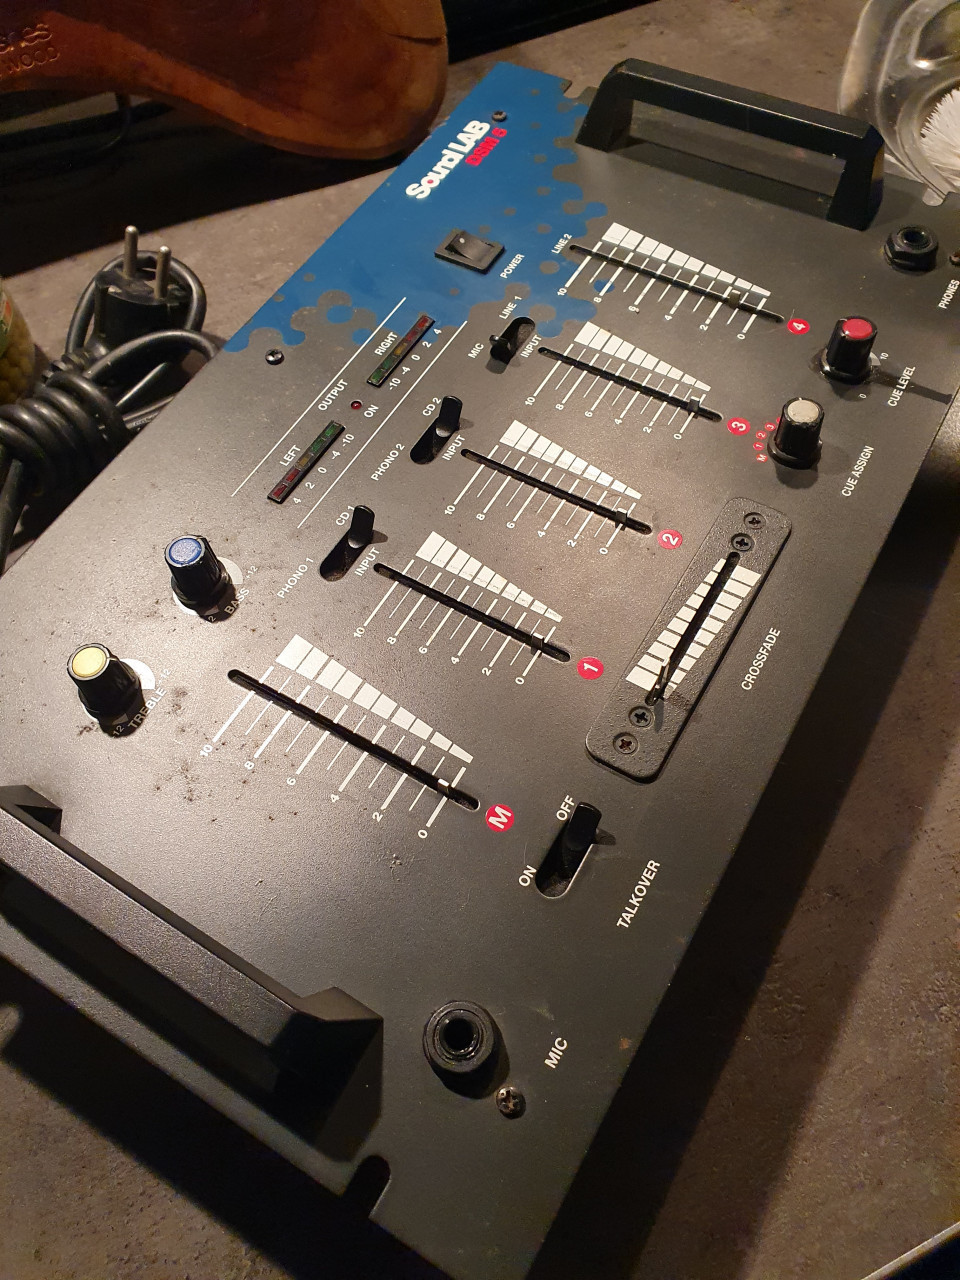 Werkende leuke vintage mengpaneel Soundlab DSM5 Mixer...